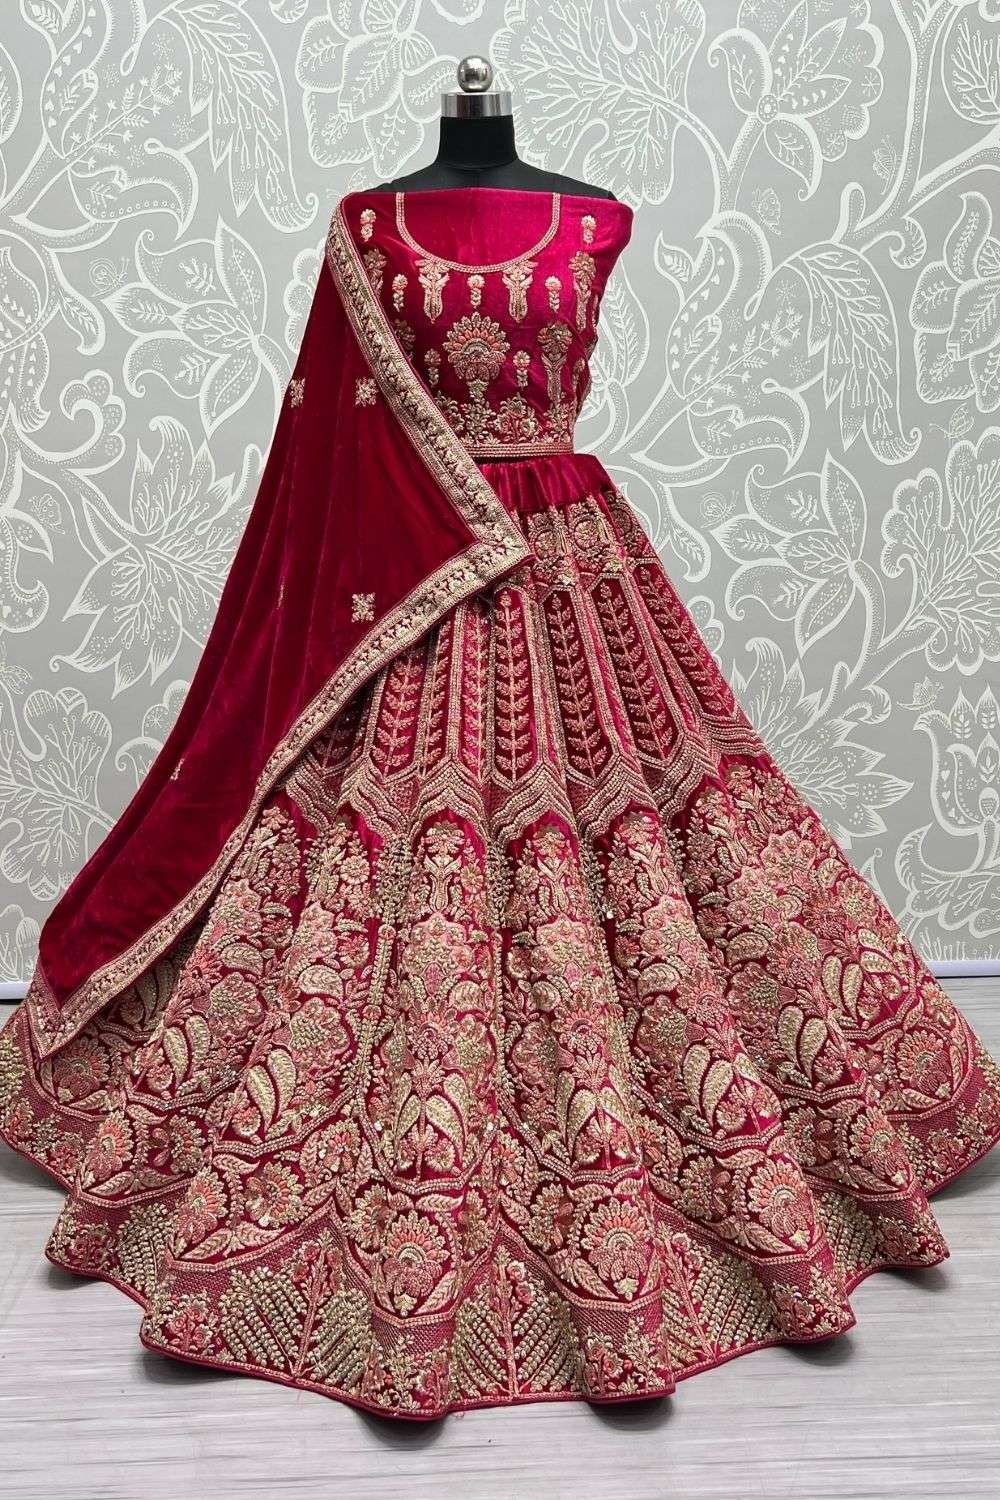 Velvet Hand Work Bridal Lehenga Choli In Pink Colour - LD4900594